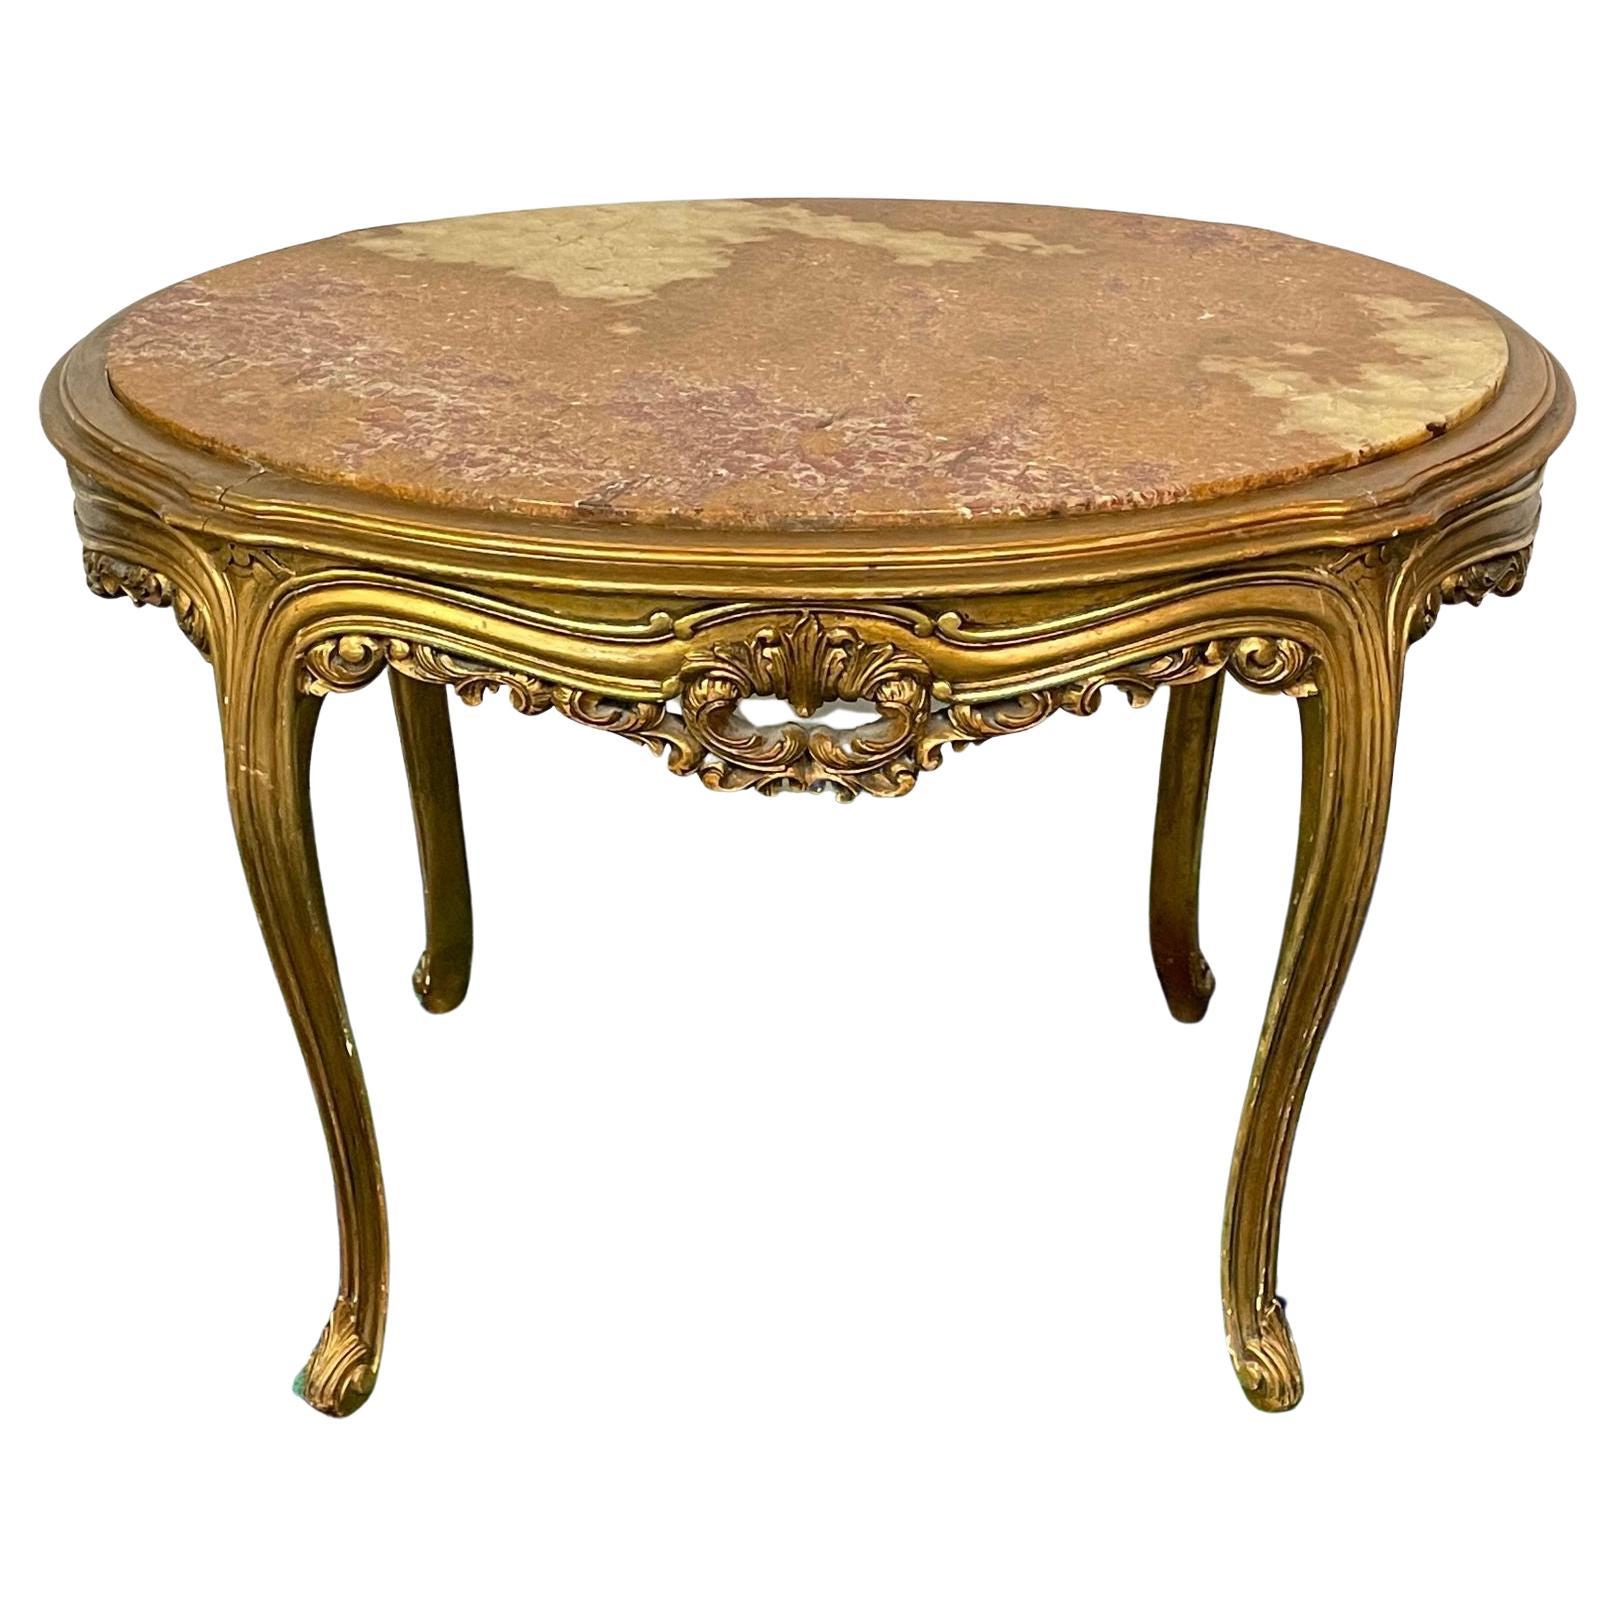 Centre de table français de style Louis XV, table d'appoint, bois doré, plateau en marbre